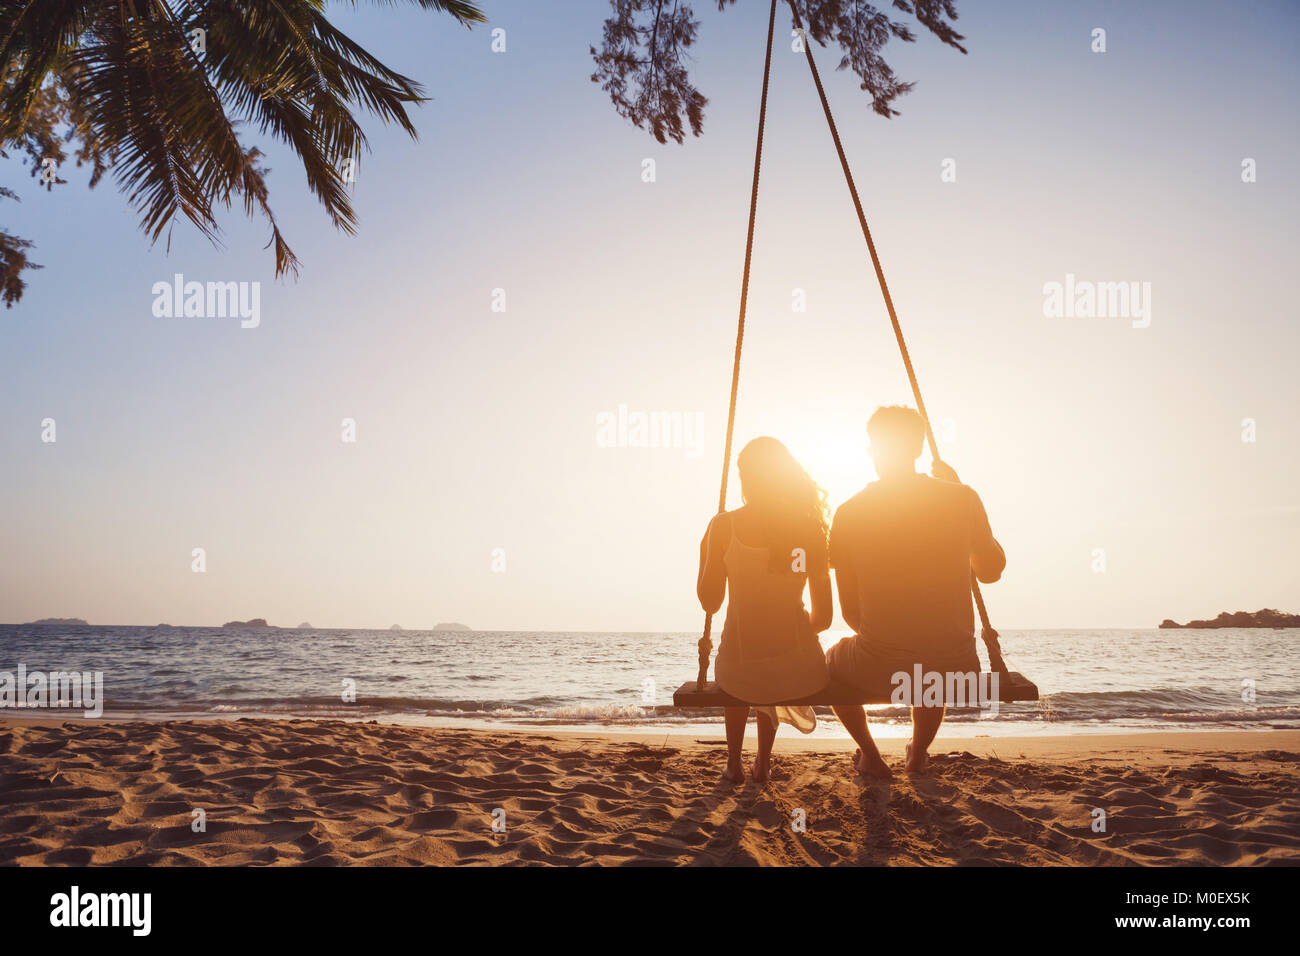 Couple amoureux romantique assis ensemble à corde balançoire à sunset beach, silhouettes de jeune homme et femme en vacances ou voyage de noces Banque D'Images